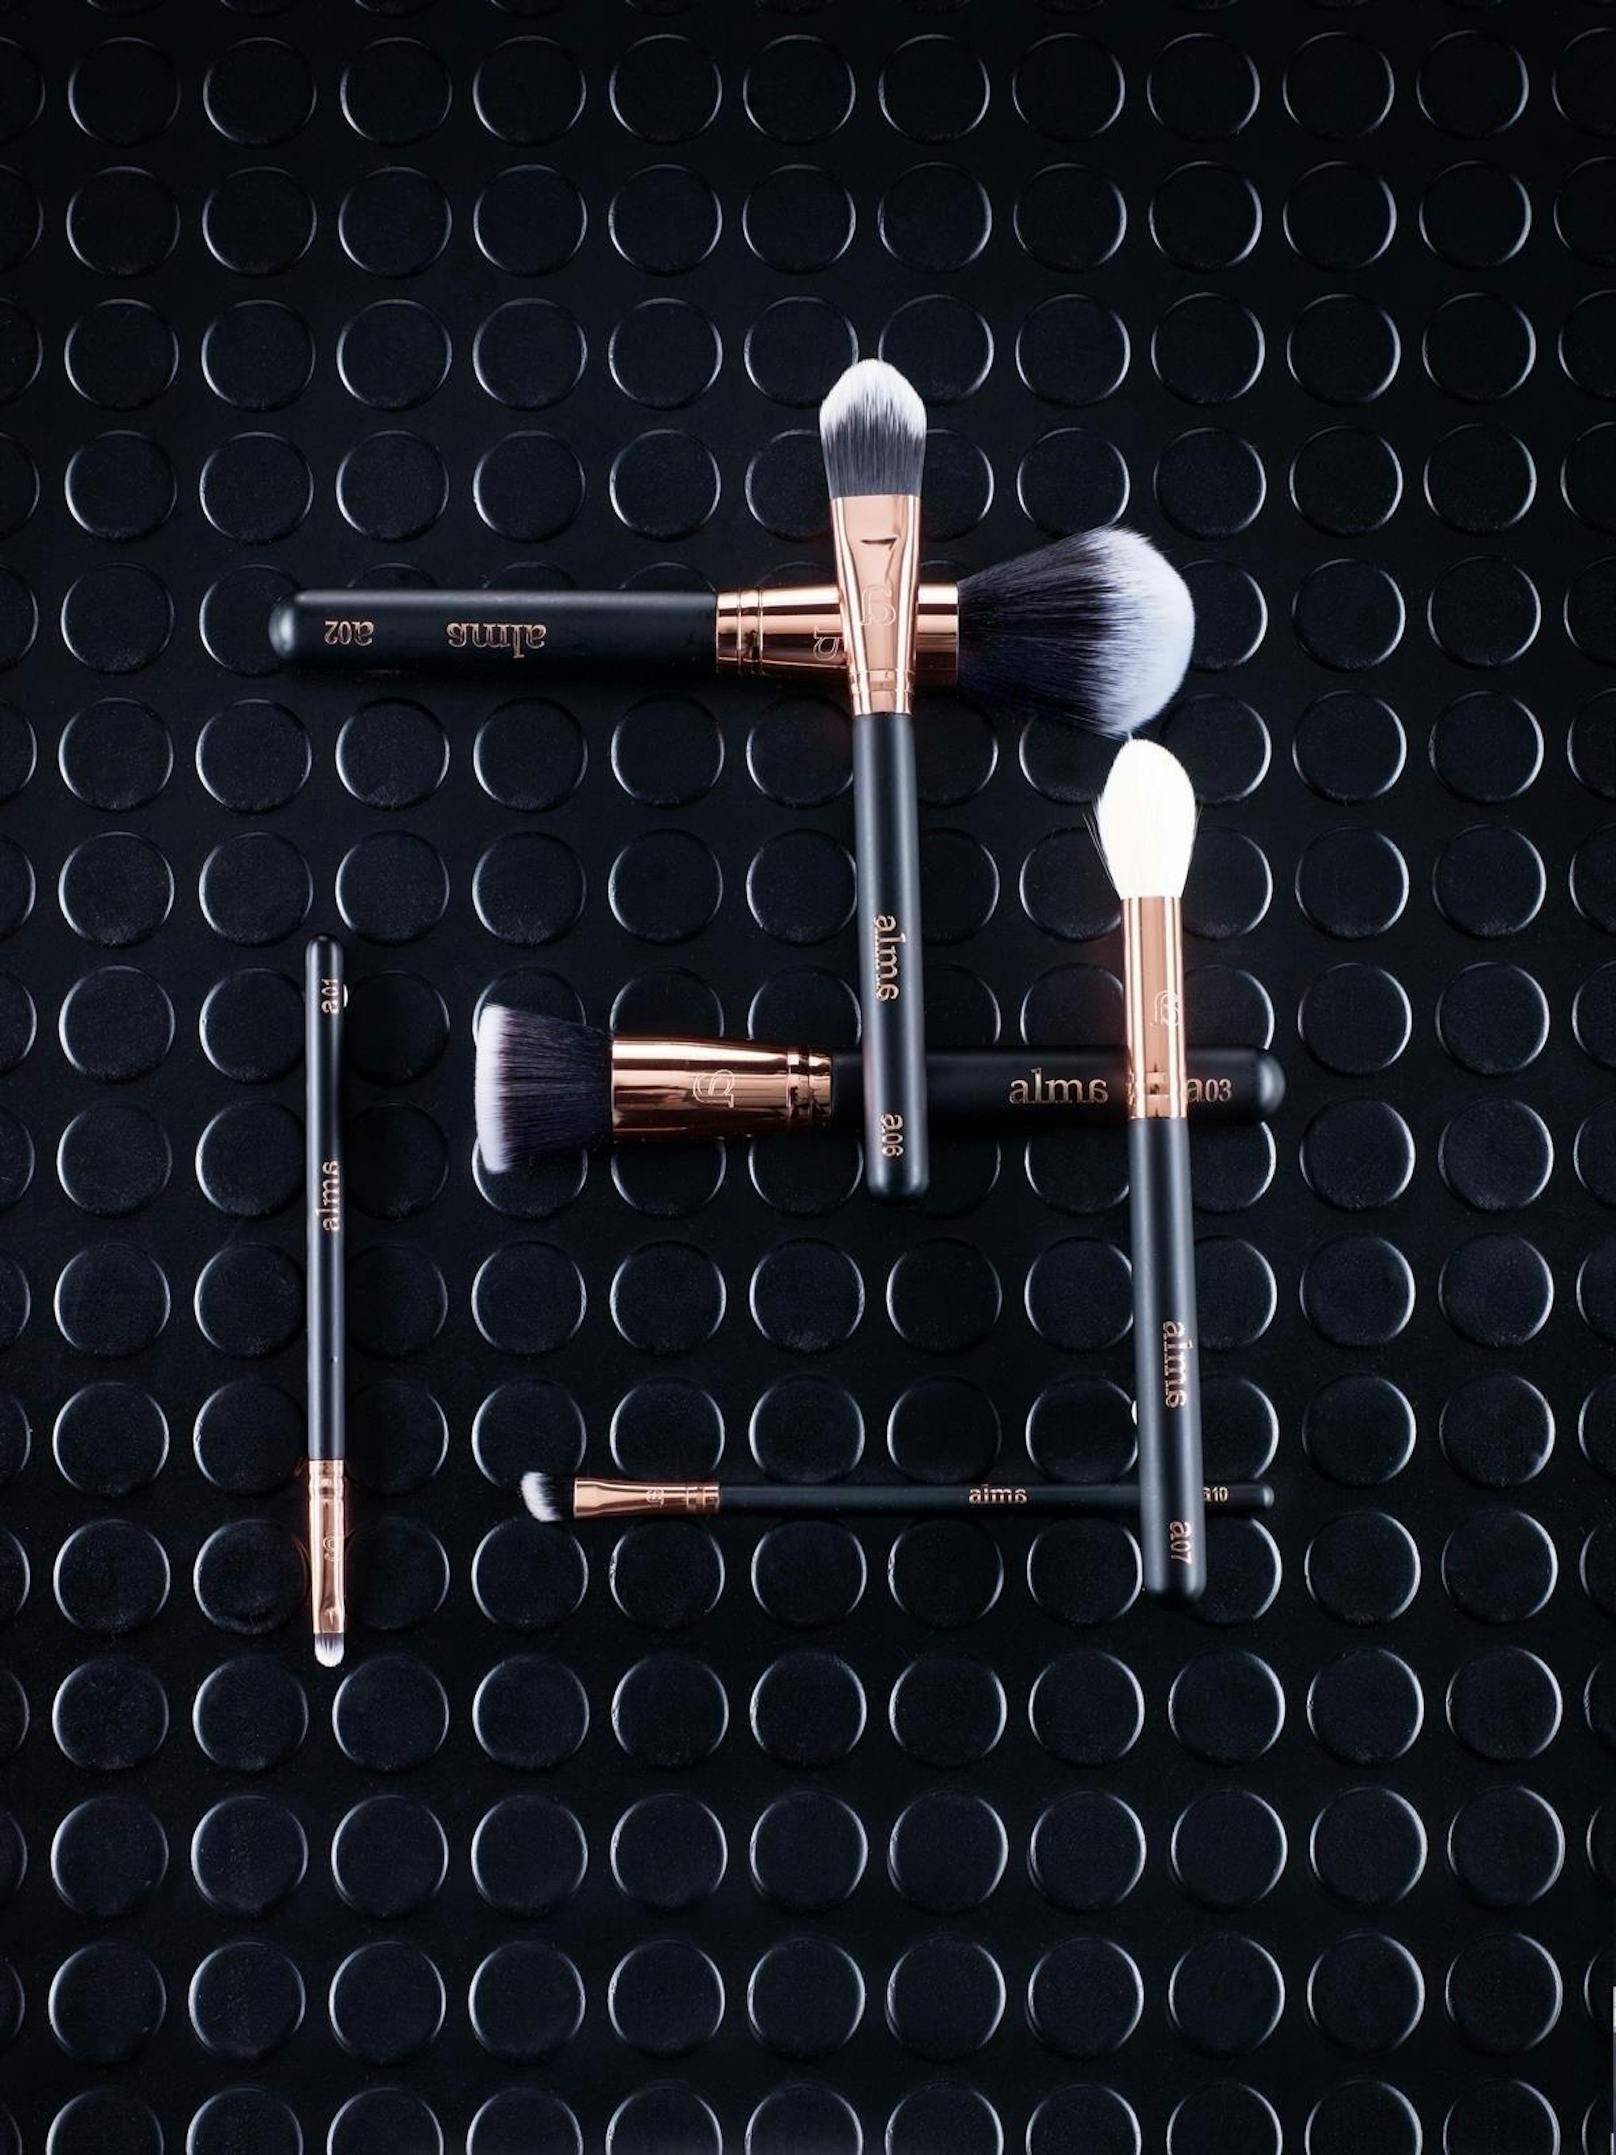 Ein Luxus-Geschenk für jeden Beauty-Fan zu Weihnachten sind die Make-Up Brushes von "Alma Brushes". Am 6.12.2018 wird es die einzigartige Möglichkeit geben sich von einem Meistergraveur die Pinsel personalisieren zu lassen.